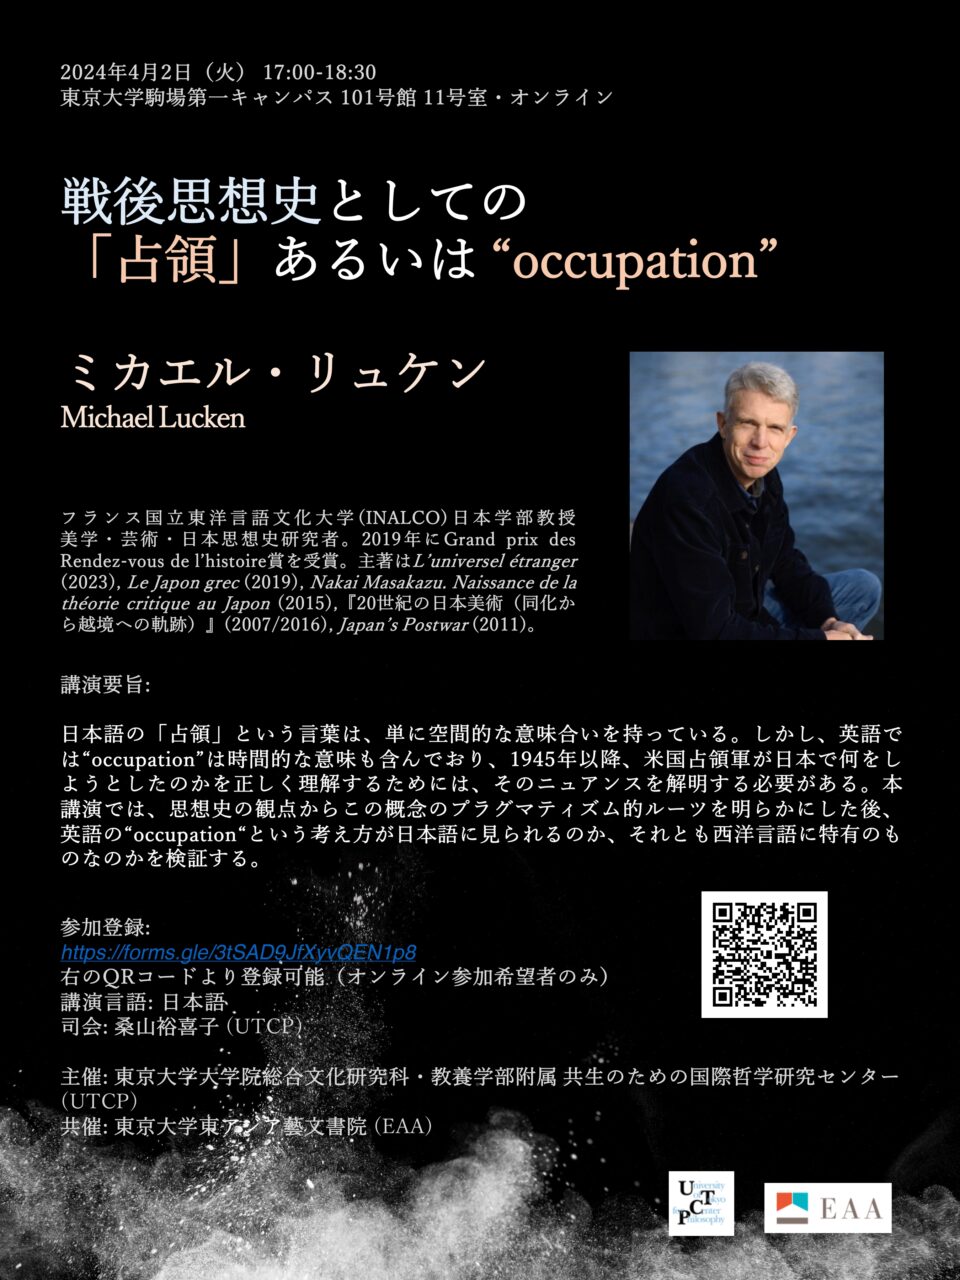 ミカエル・リュケン教授日本語講演会「戦後思想史としての「占領」あるいは“occupation”」